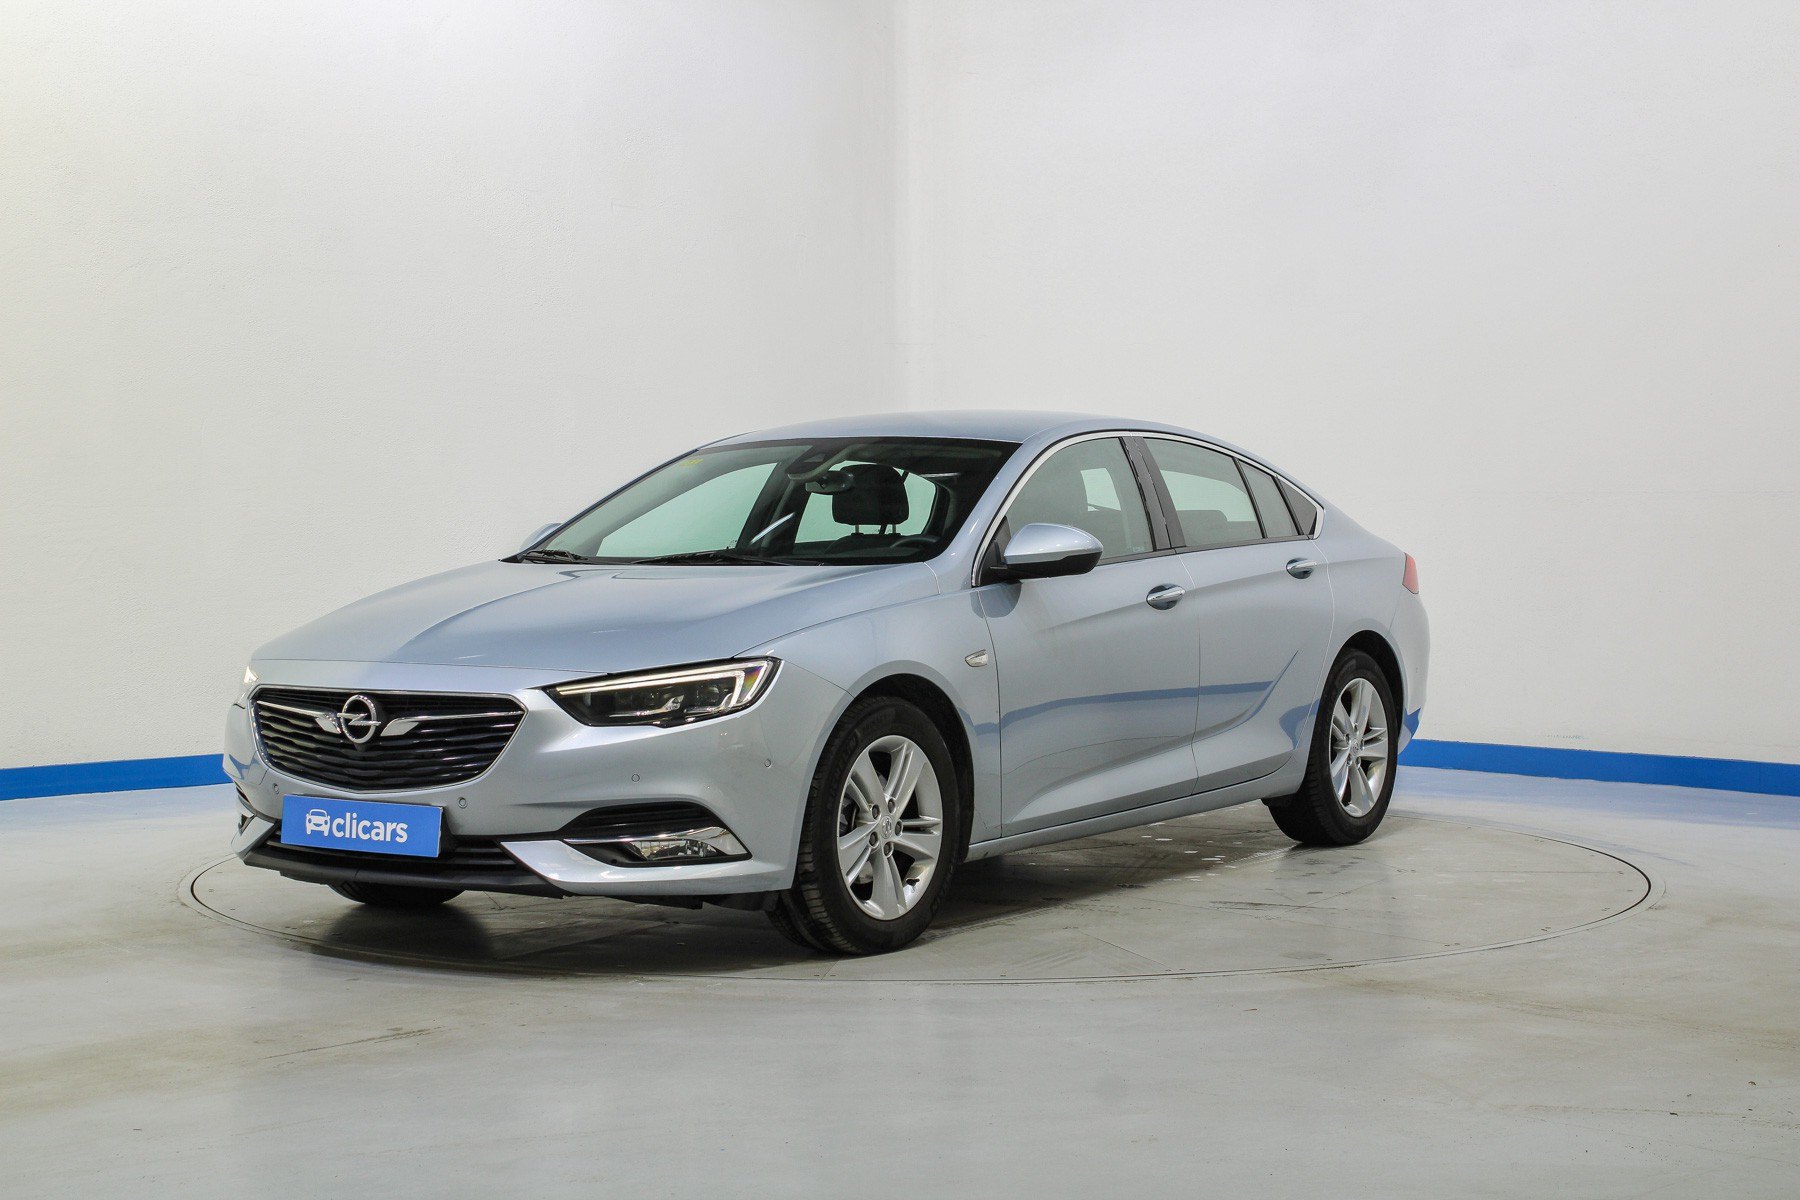 Opiniones Opel insignia: ¿qué piensan los compradores y profesionales?